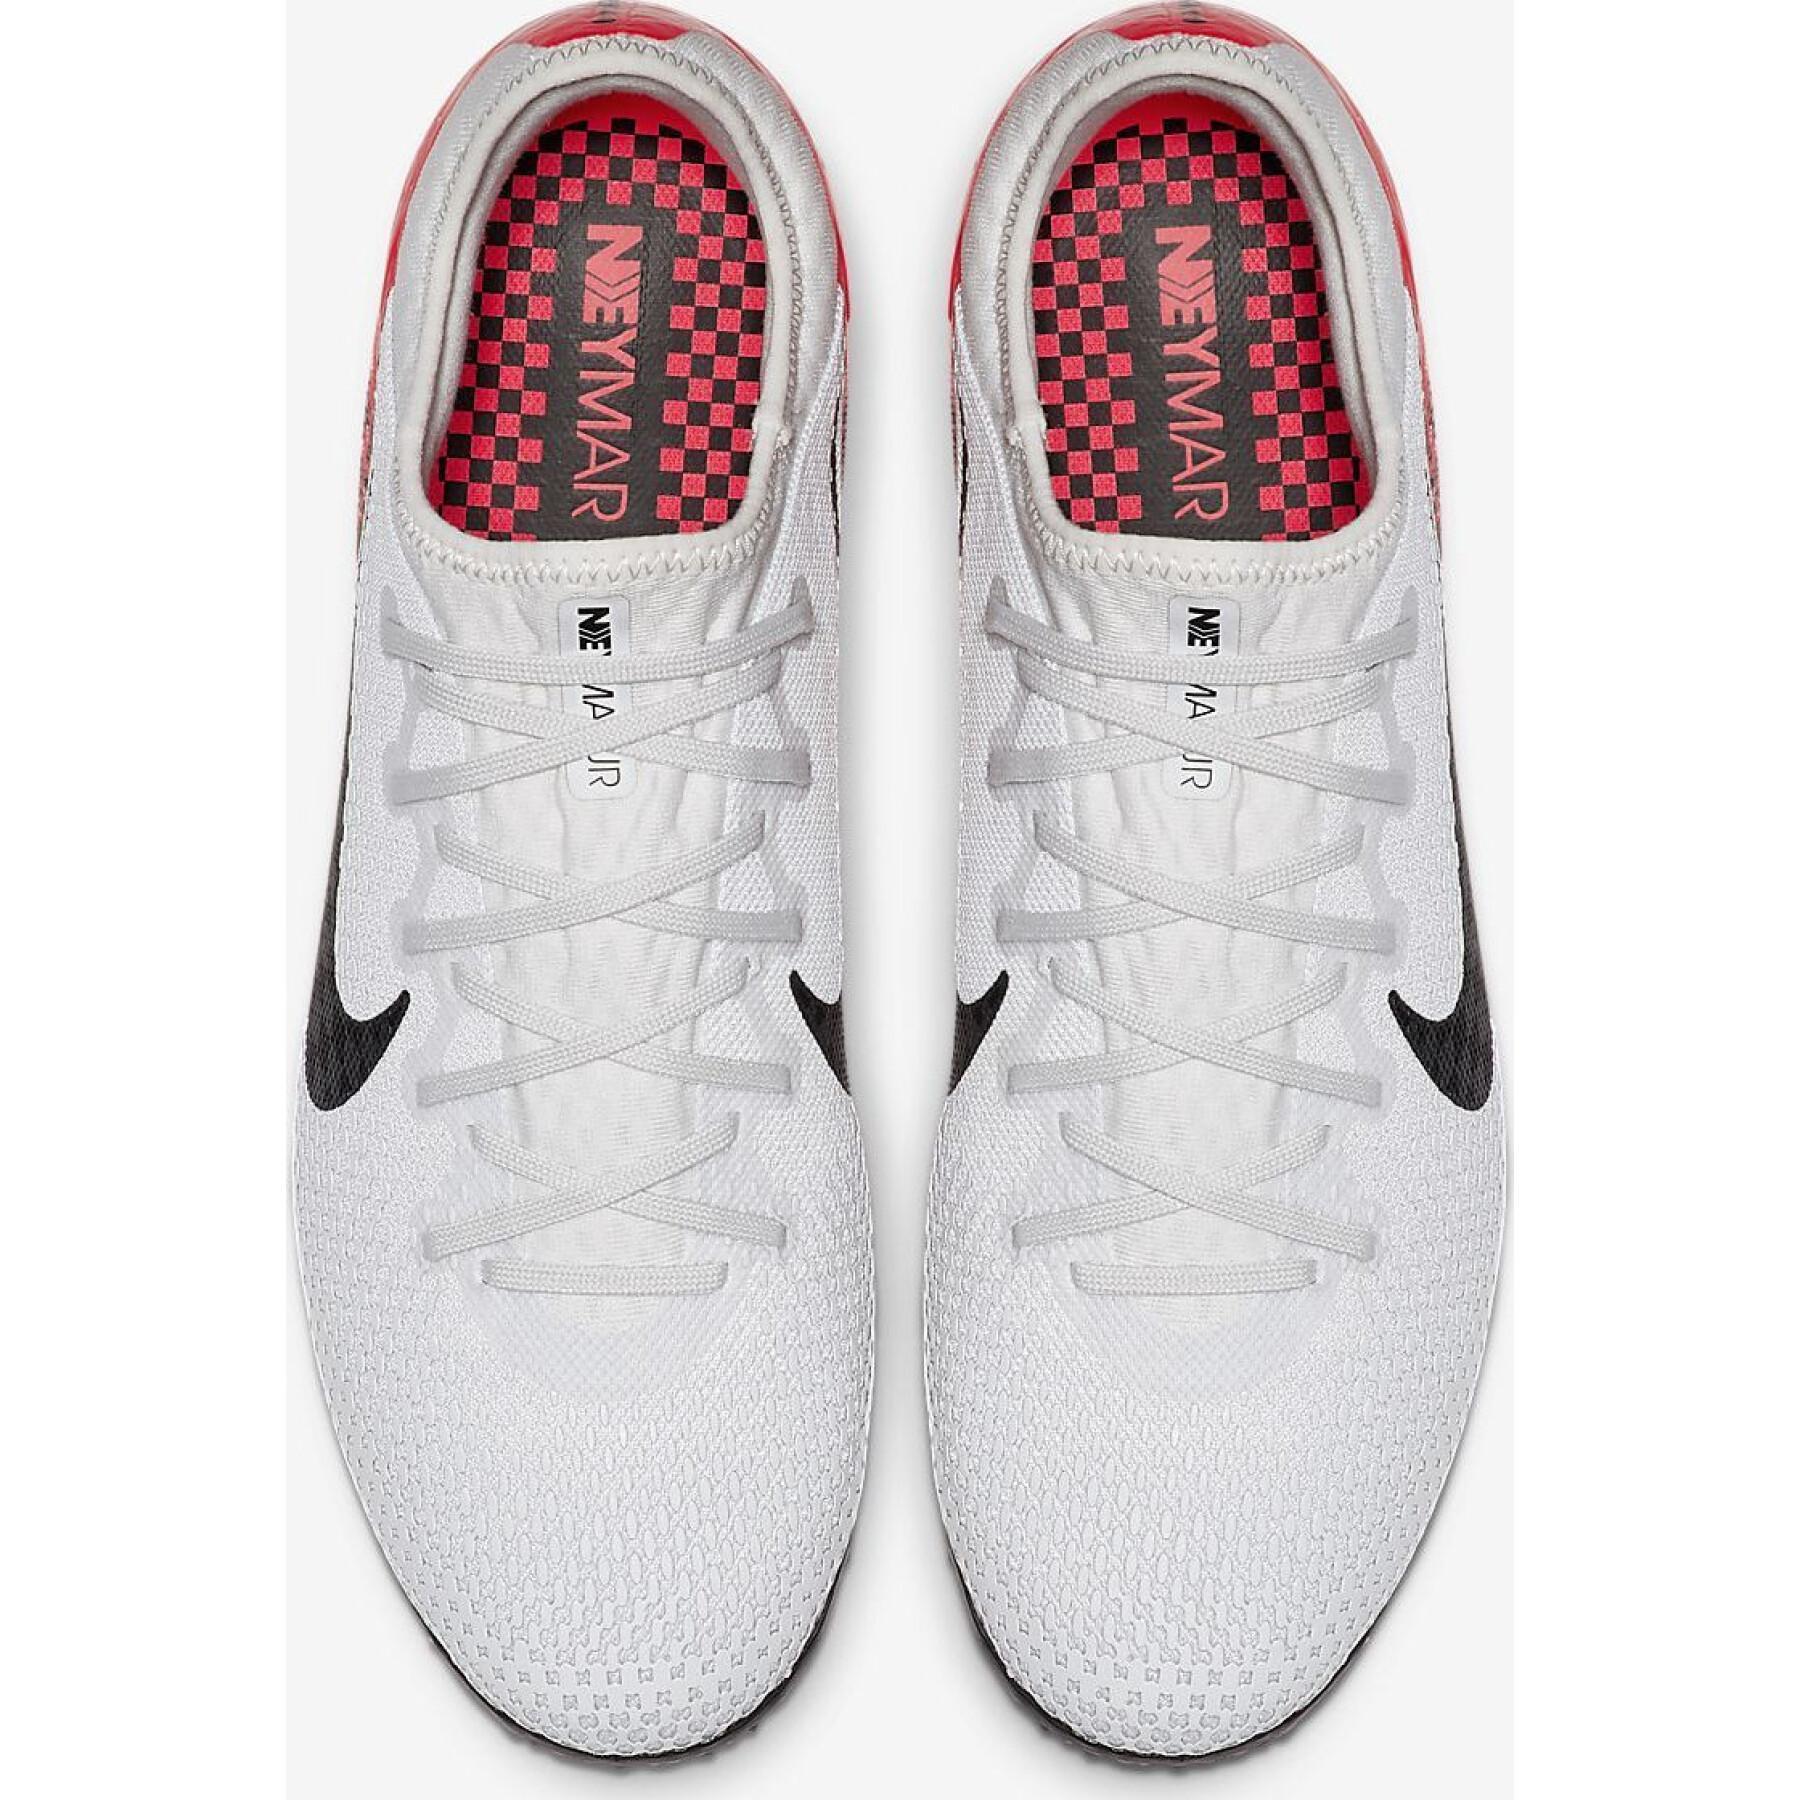 Schuhe Nike Mercurial Vapor 13 Pro N TF